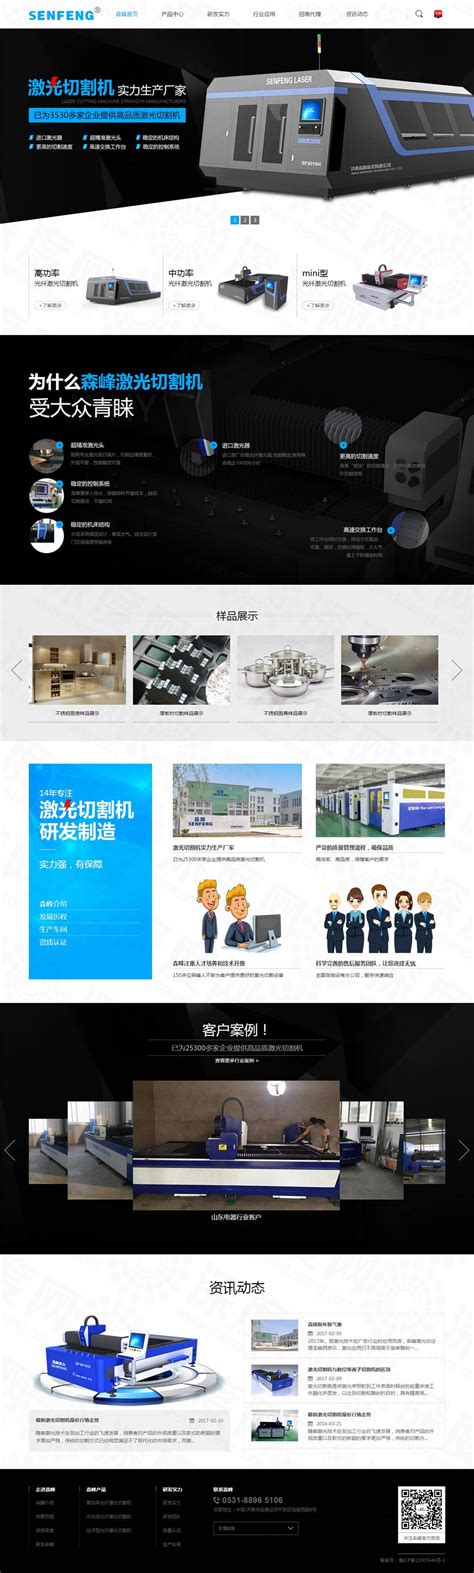 济南森峰激光切割机品牌网站建设案例|品牌/集团网站|深度网